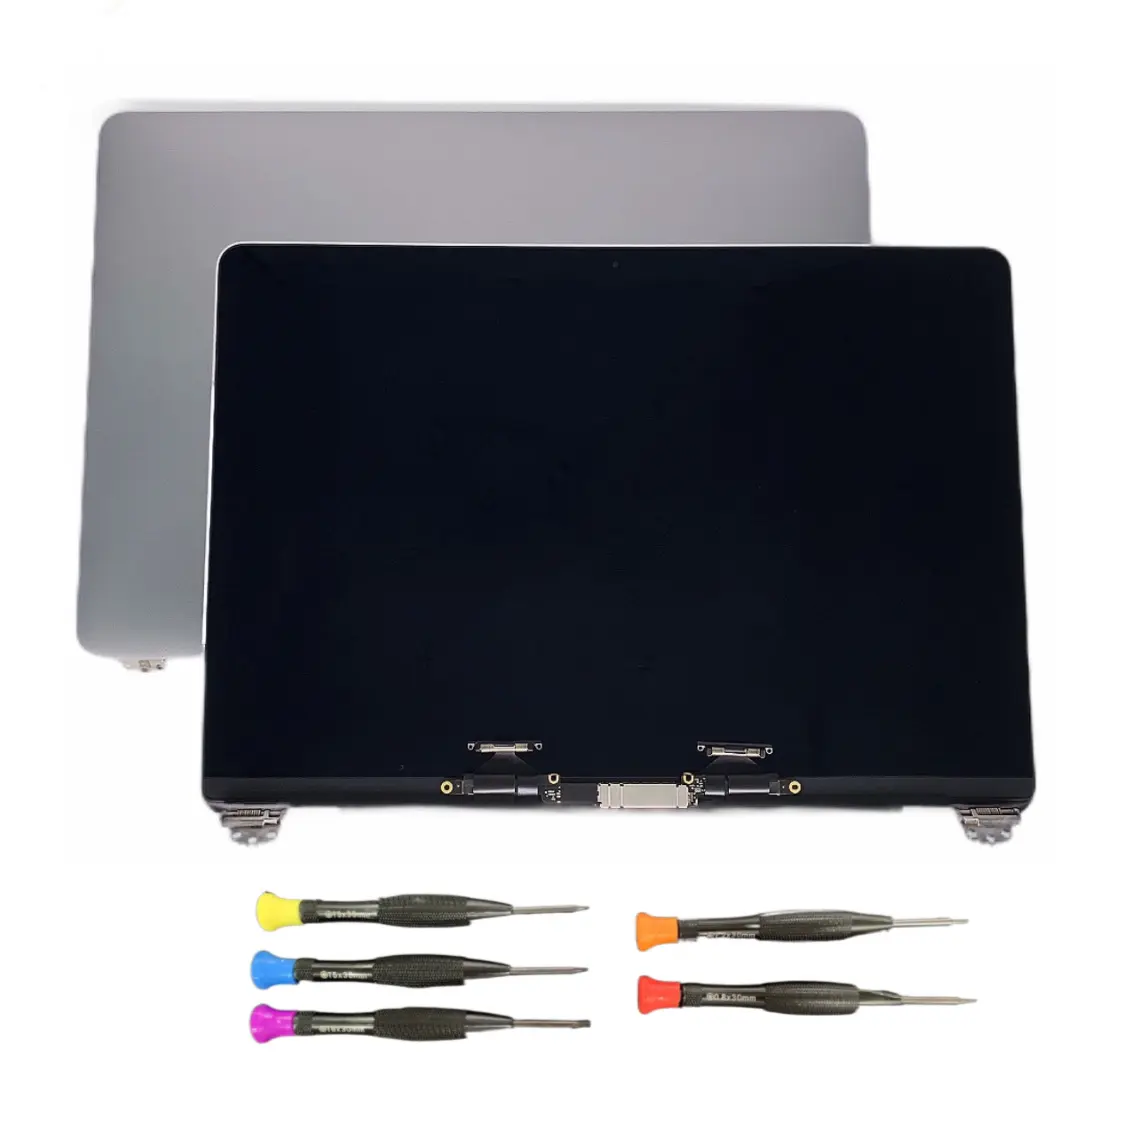 אמיתי חדש גריי צבע A1708 LCD החלפת מסך מלא LED MonitorFor Macbook Pro רשתית 13 "A1706 מלא תצוגה